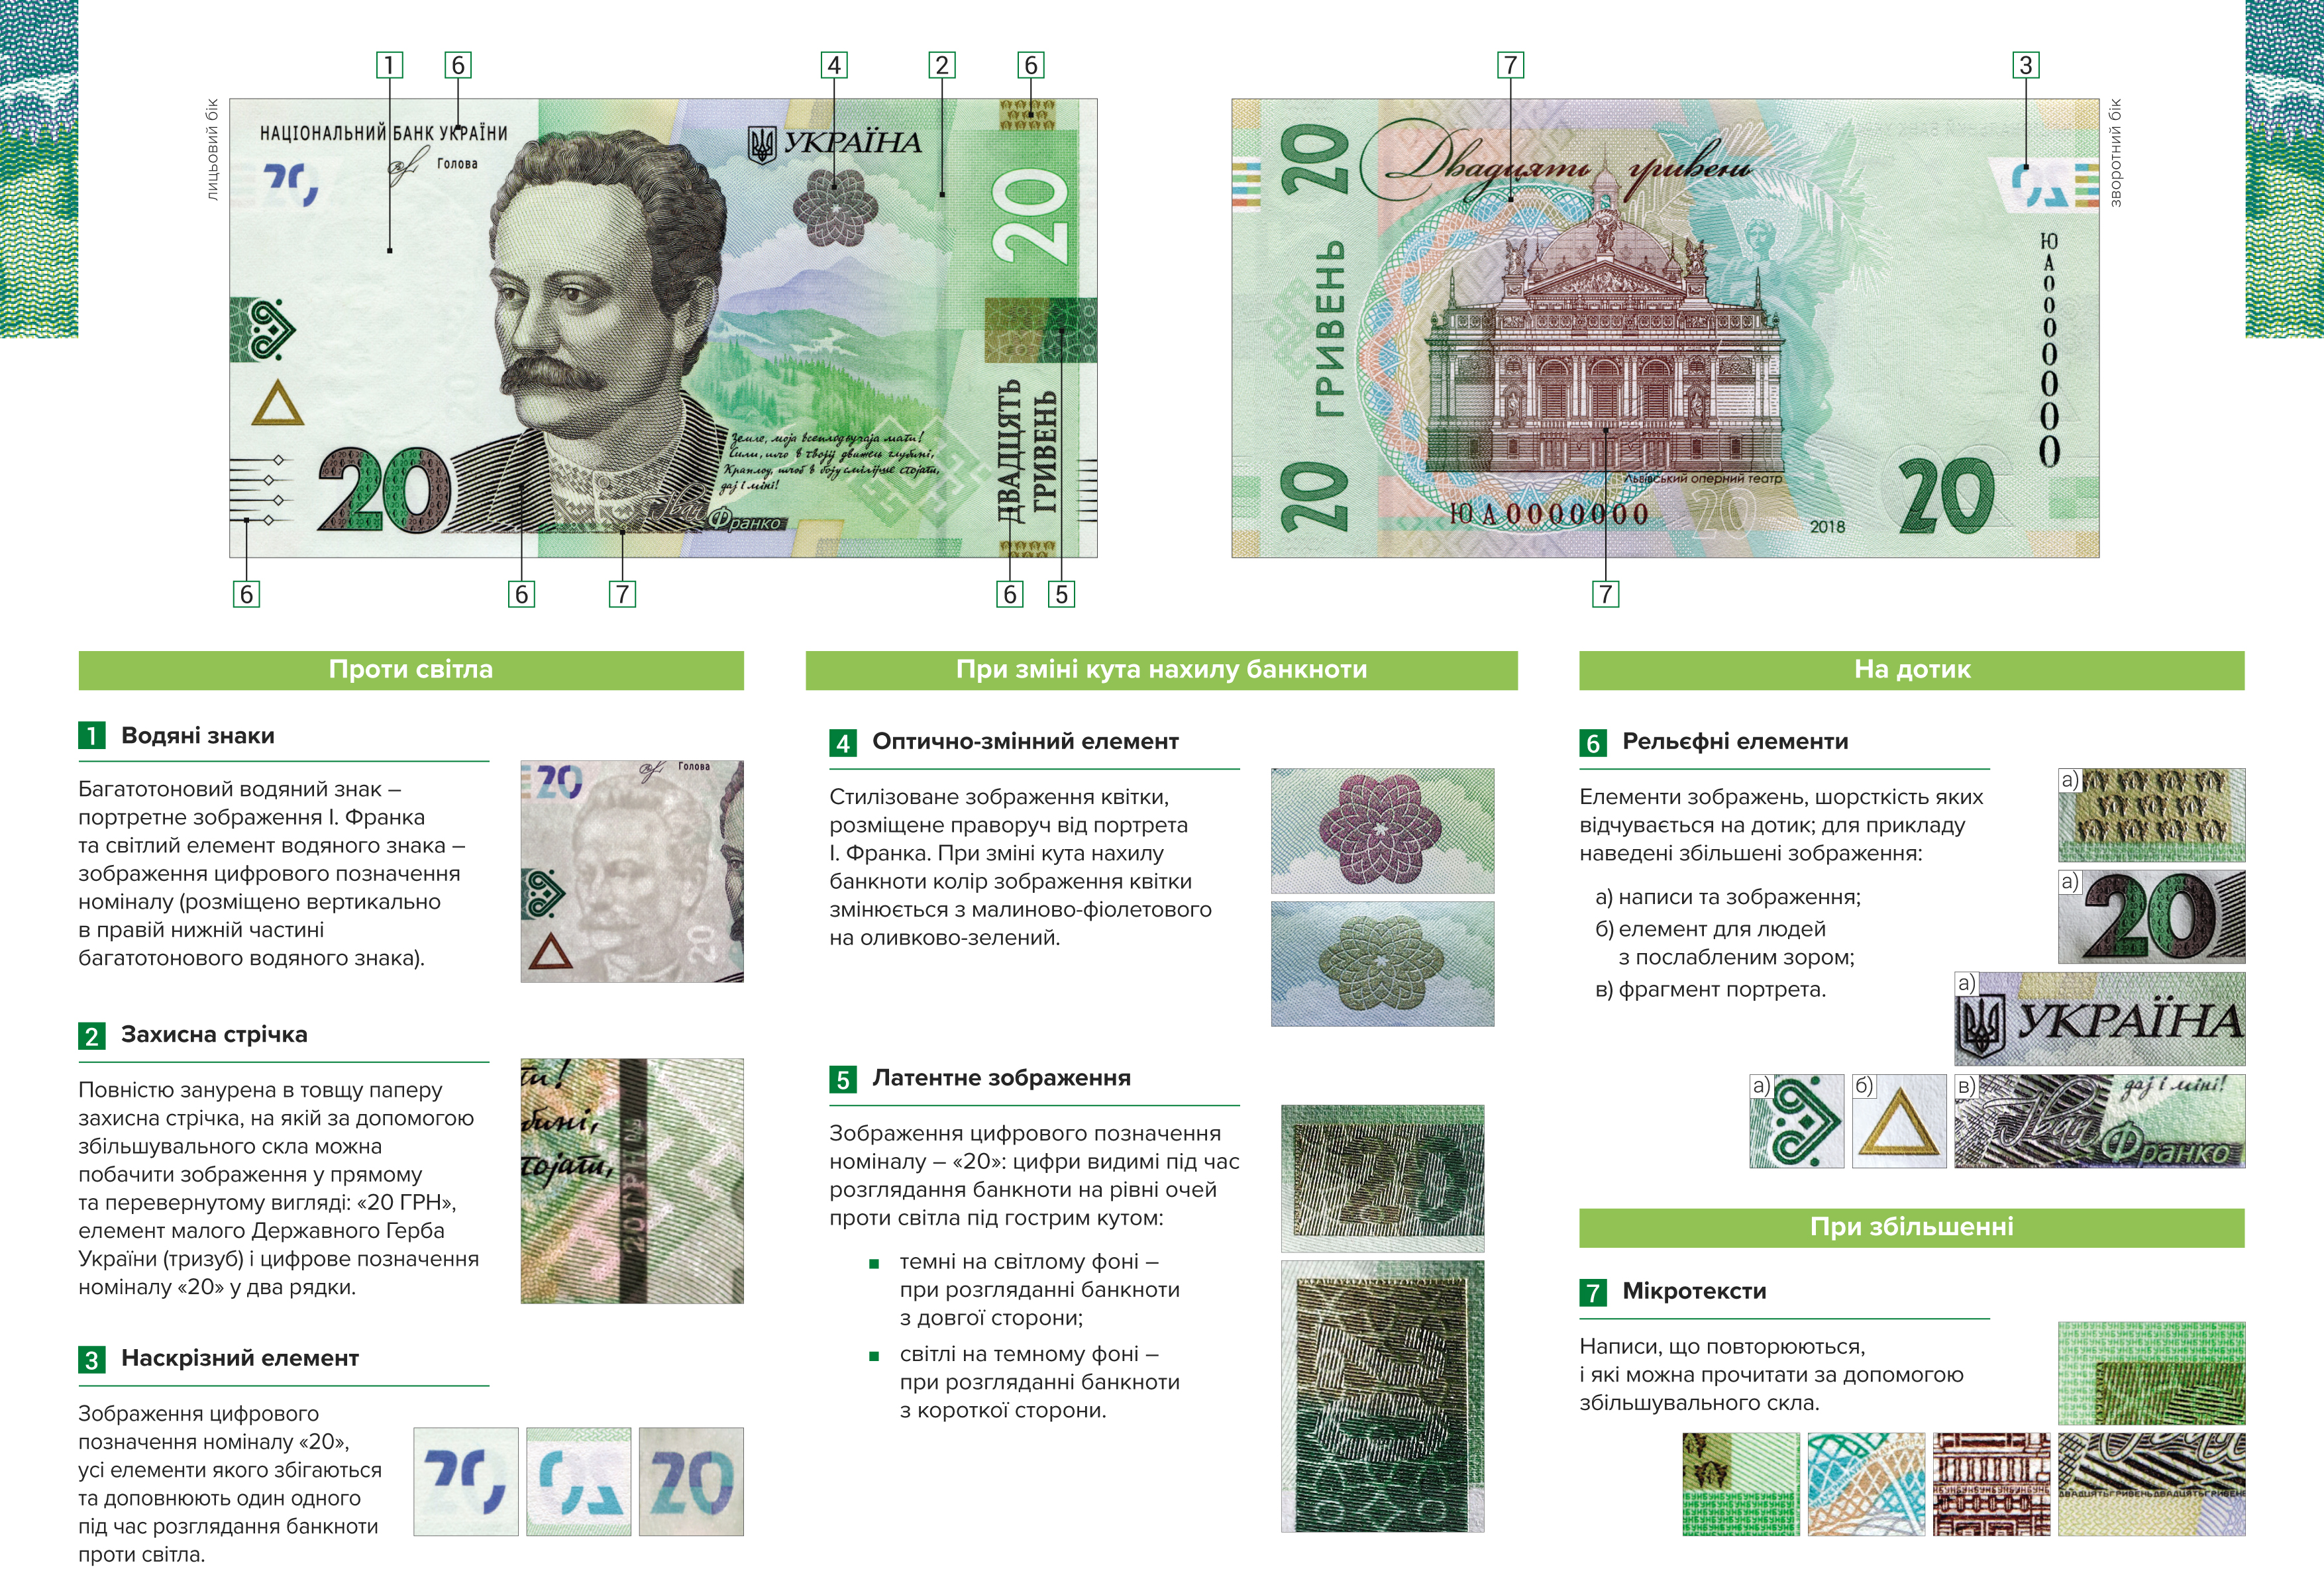 Національний банк України 25 вересня 2018 року ввів в обіг банкноту номіналом 20 гривень зразка 2018 року зі оновленим дизайном і удосконаленою системою захисту